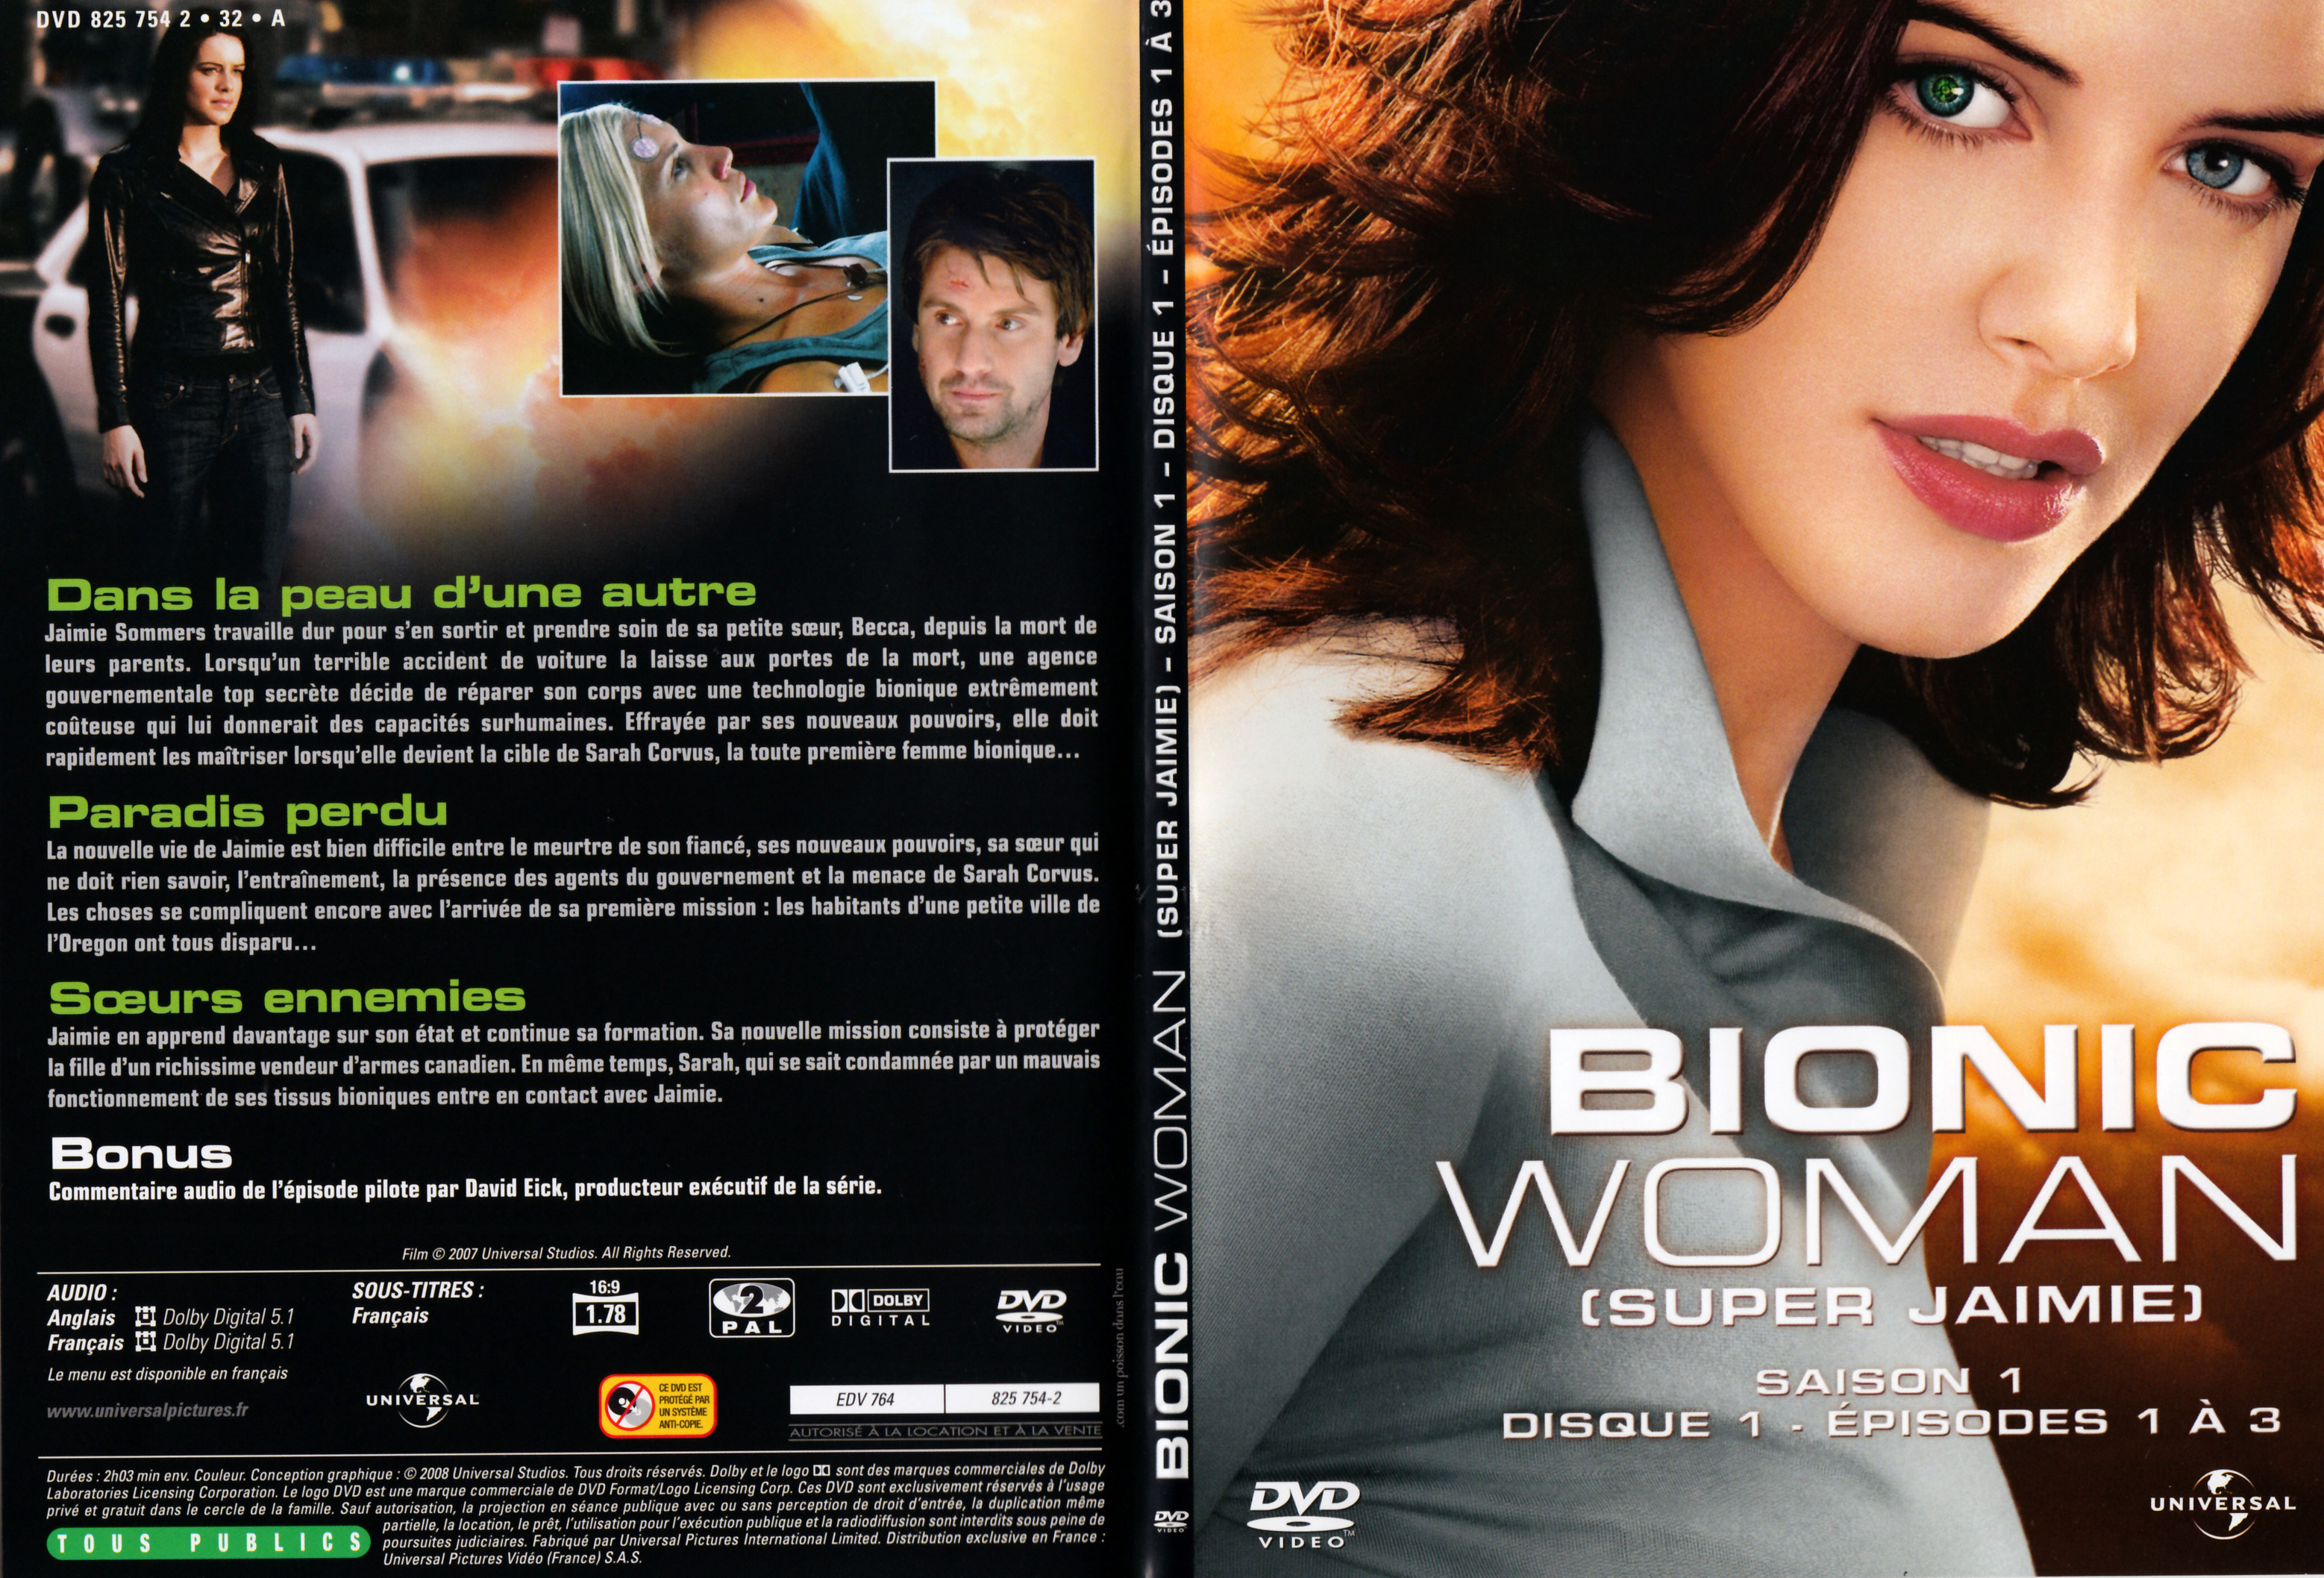 Jaquette DVD Bionic Woman - Super Jaimie Saison 1 DVD 1